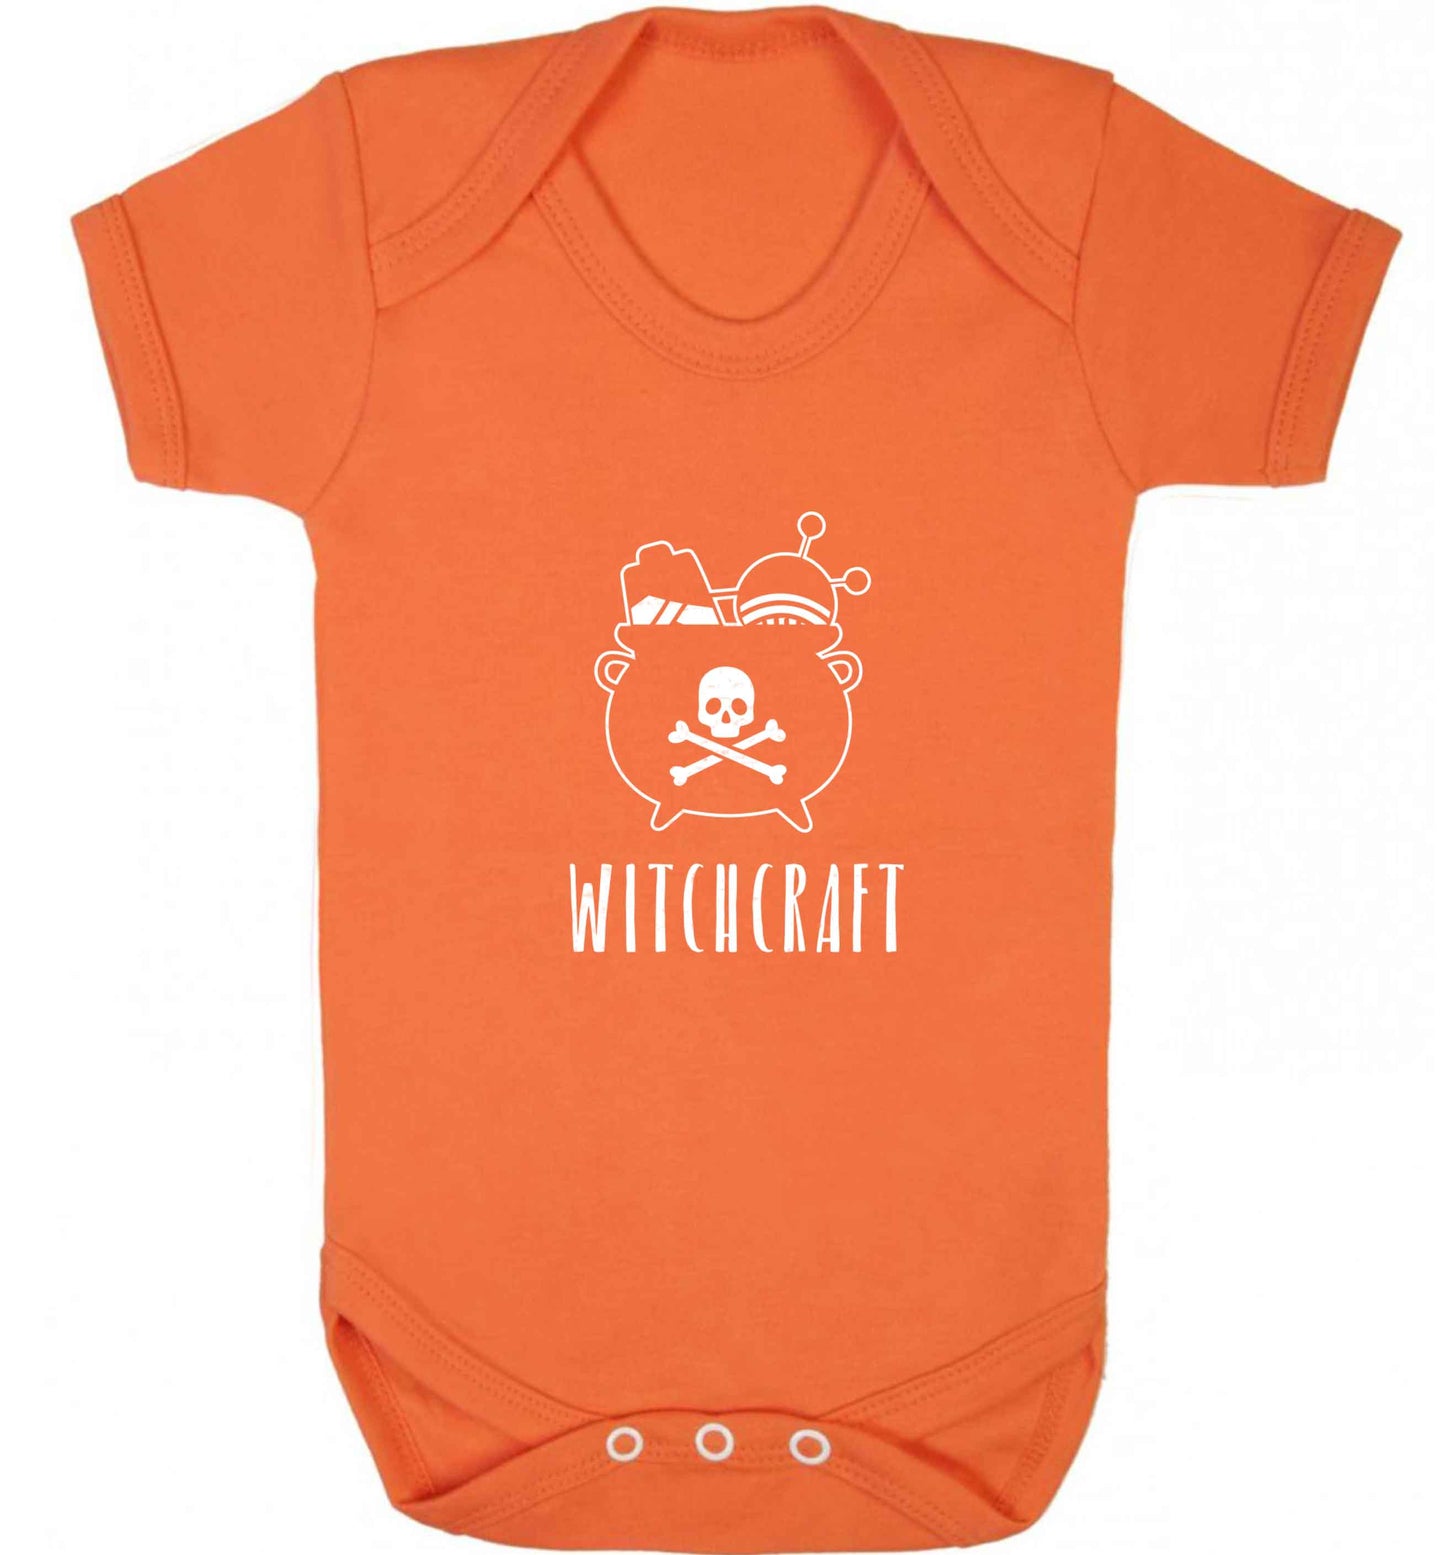 Witchcraft baby vest orange 18-24 months